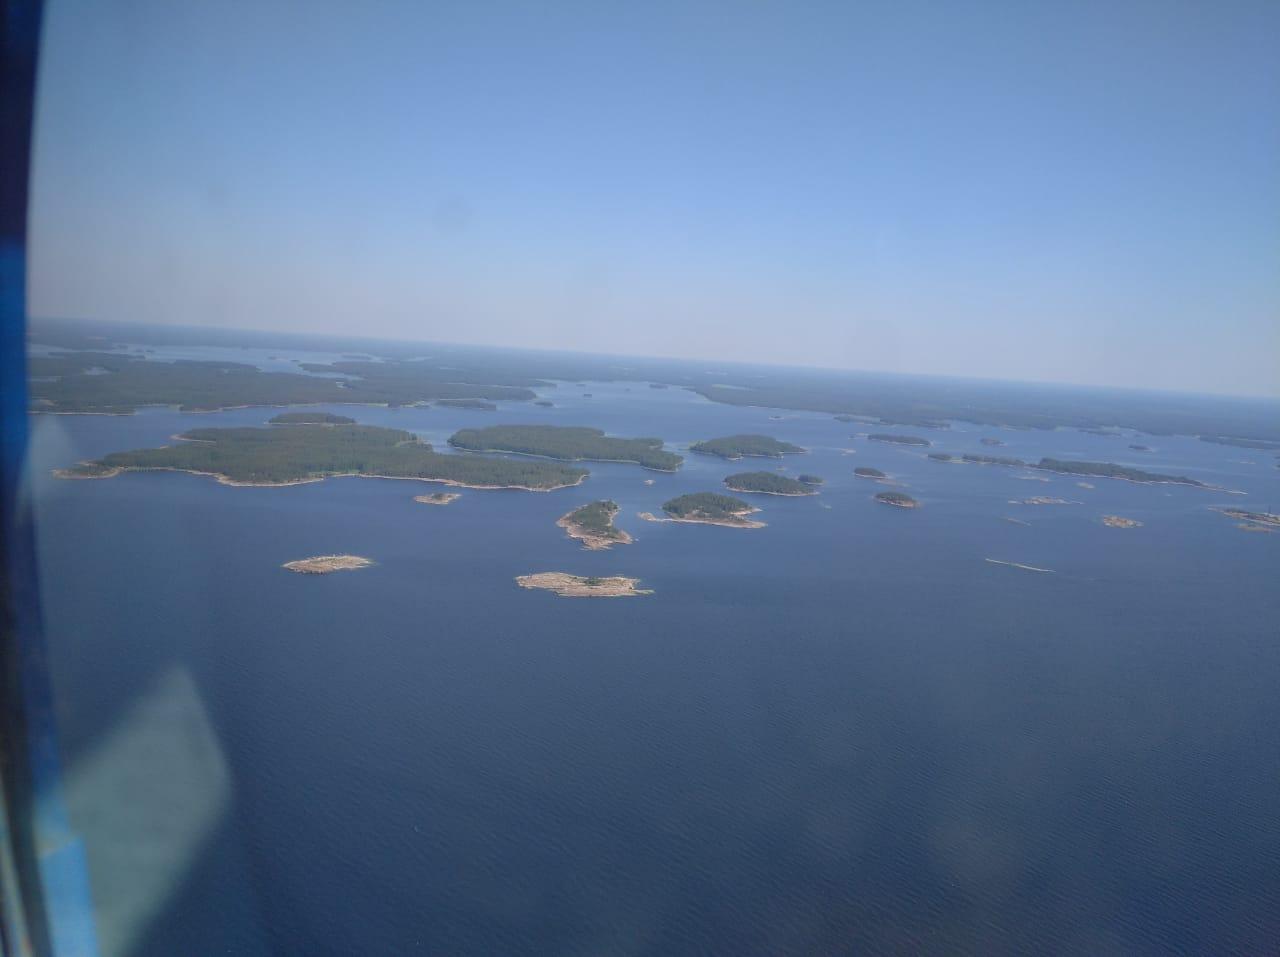 Остров козлиный в финском заливе на фото